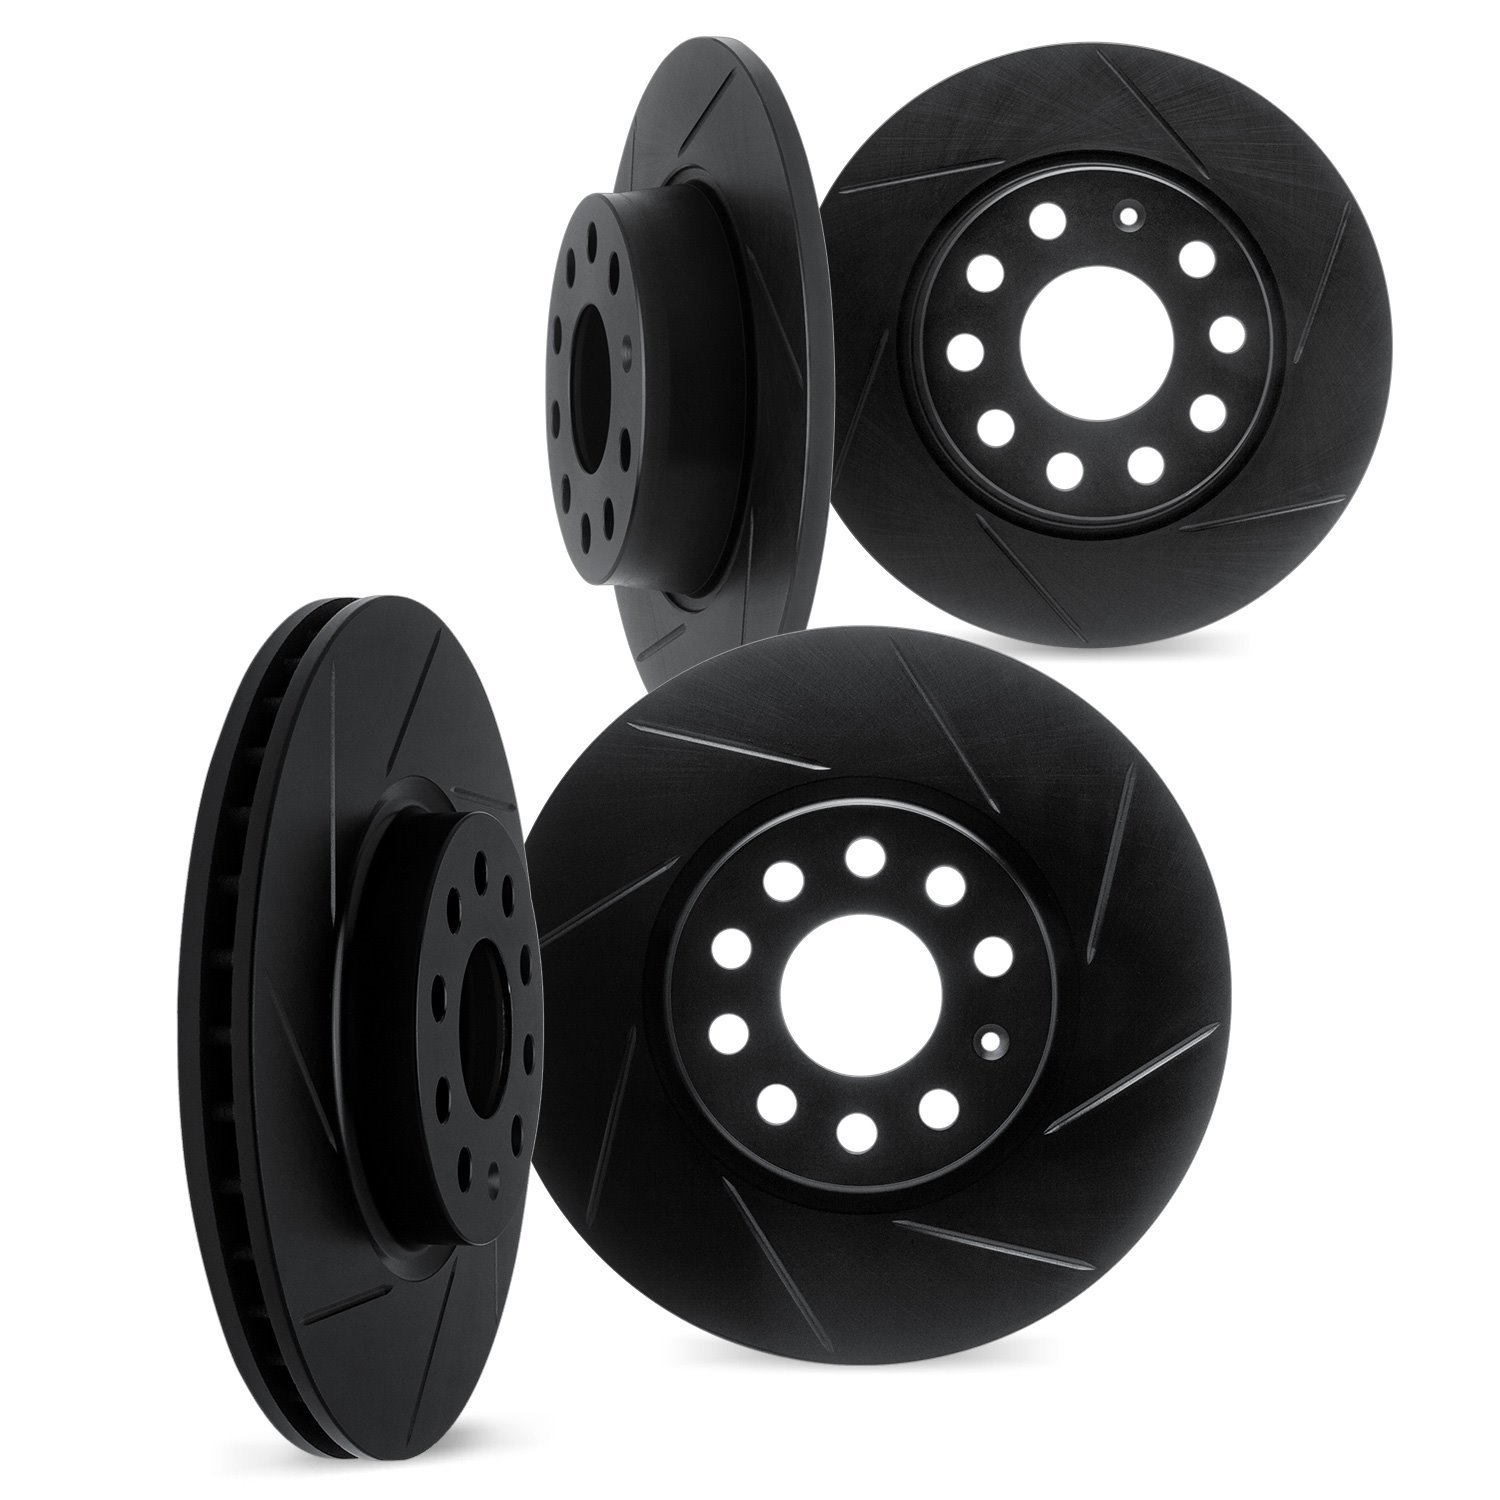 3004-03031 Slotted Brake Rotors [Black], Fits Select Kia/Hyundai/Genesis, Position: Front and Rear